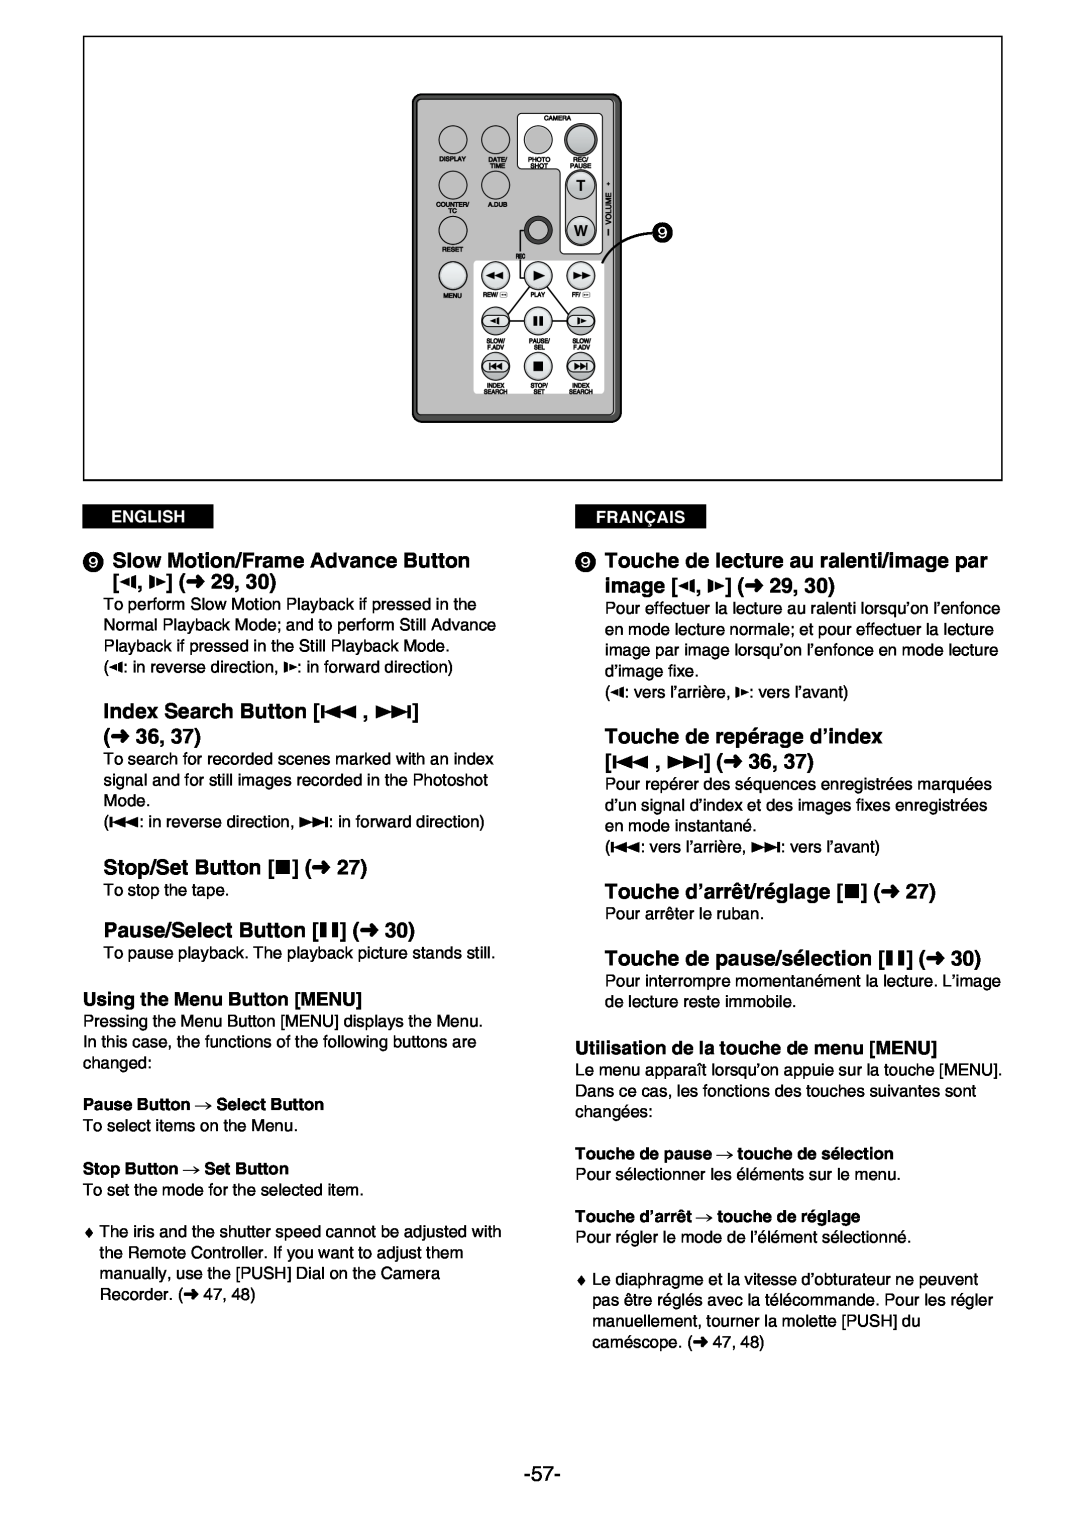 Panasonic AG- DVC 15P Slow Motion/Frame Advance Button E, O m29, Touche de lecture au ralenti/image par image E, O m29 